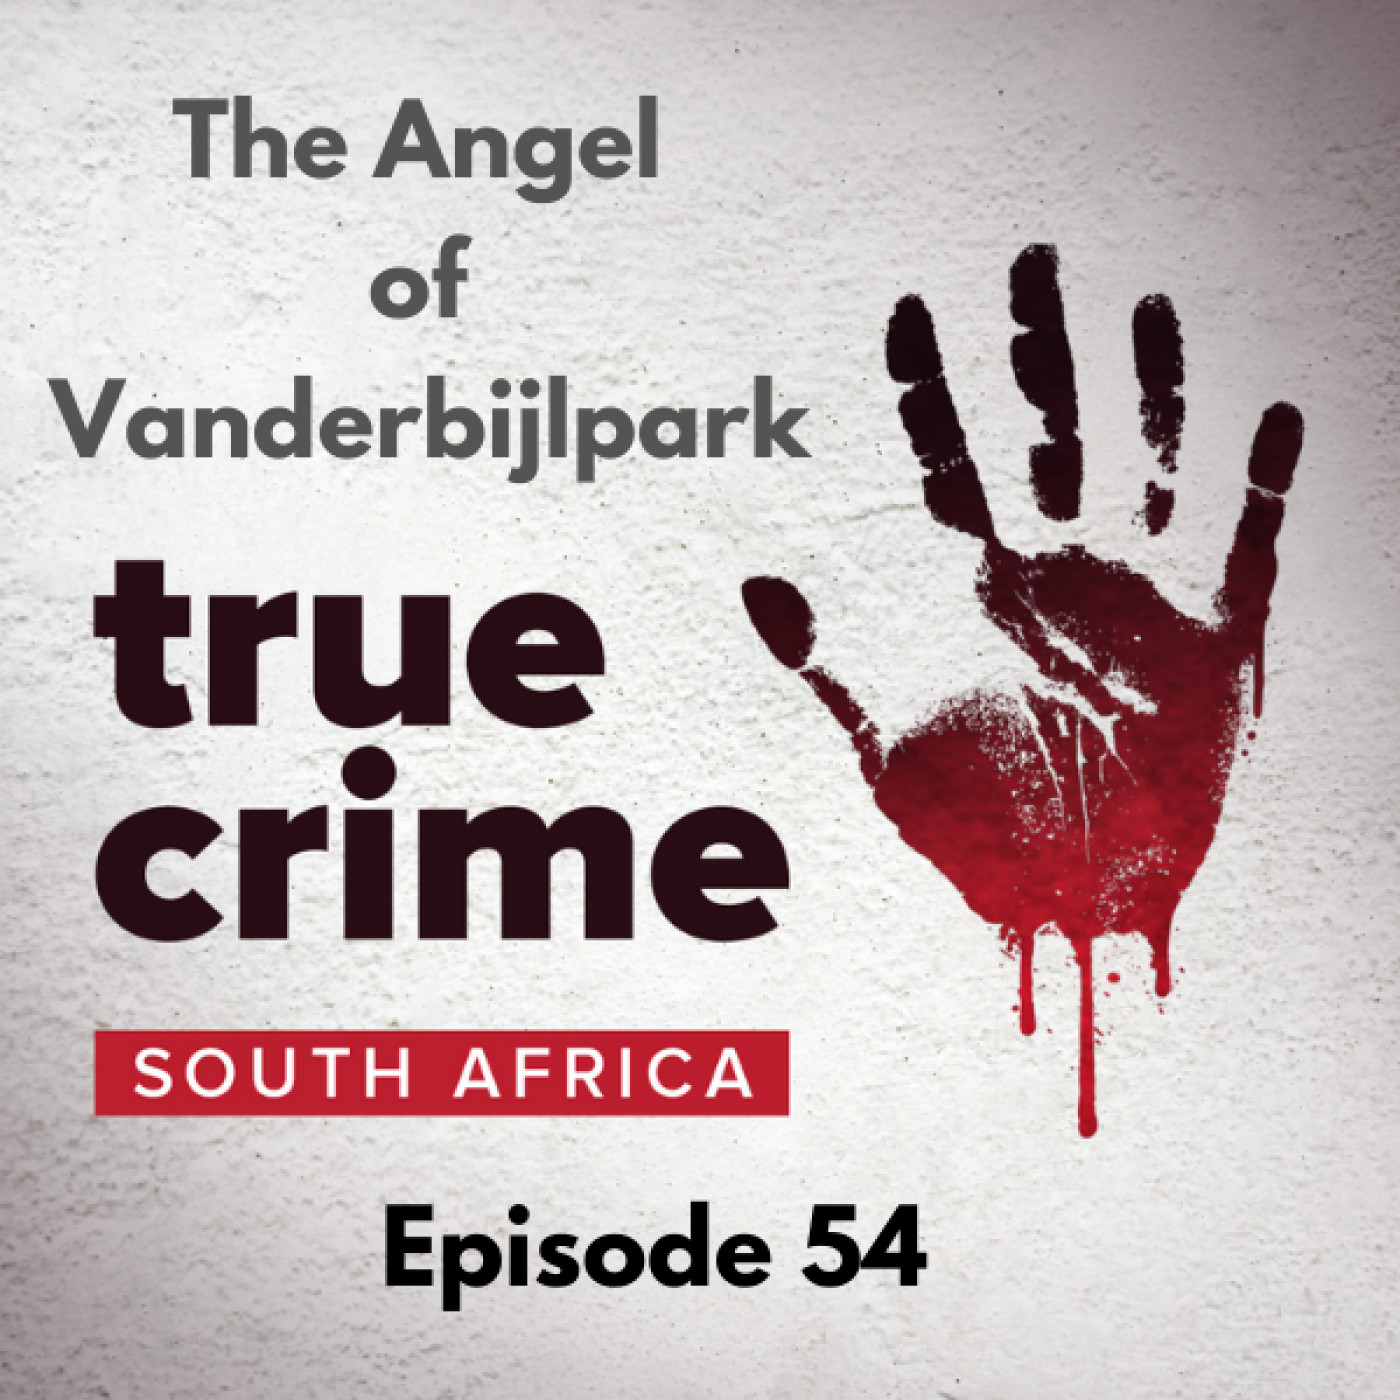 Episode 54 - The Angel of Vanderbijlpark